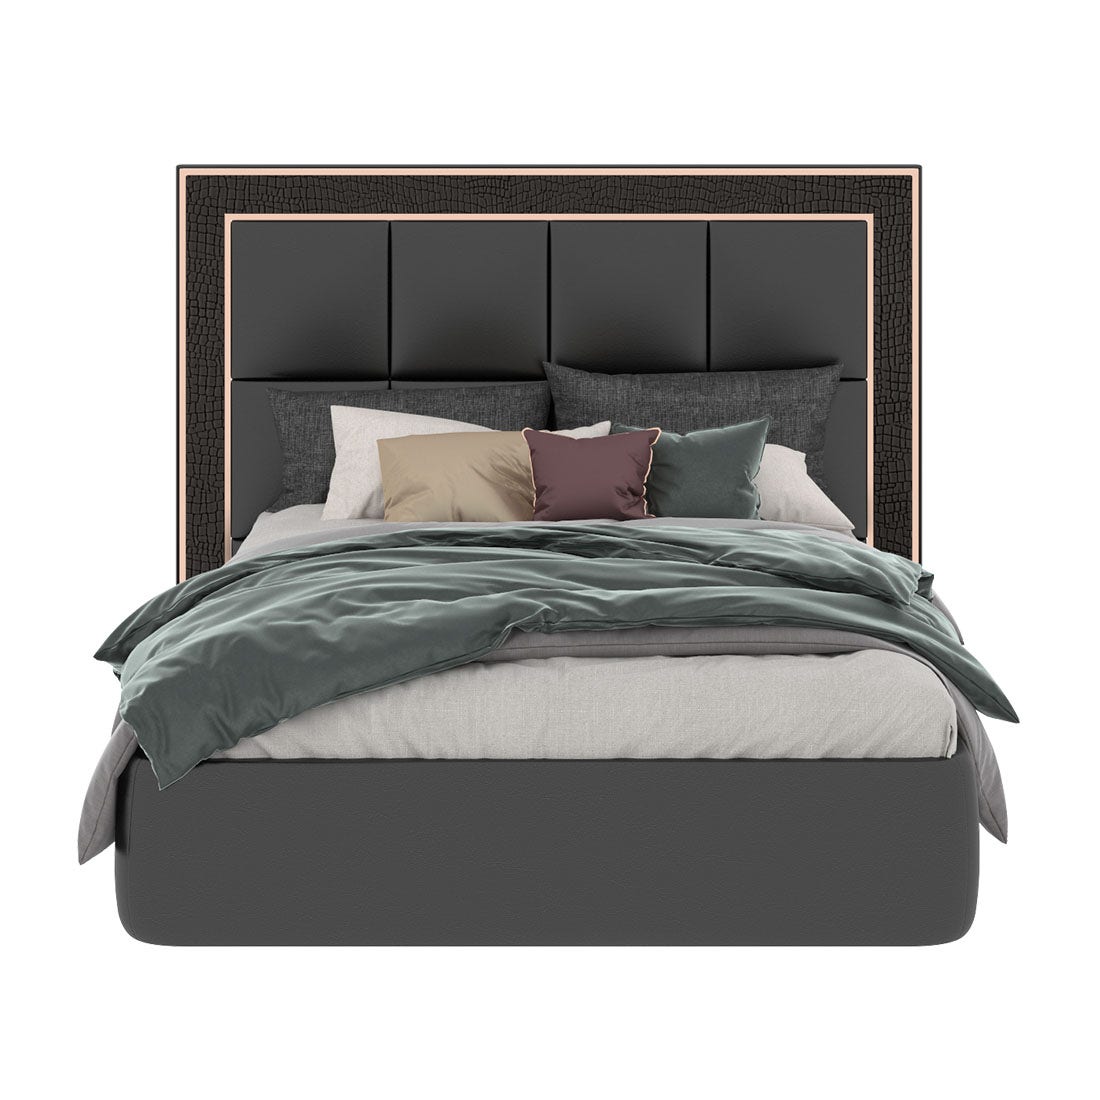 เตียงนอน ขนาด 5 ฟุต รุ่น Bellini หนังจระเข้สีดำ-01